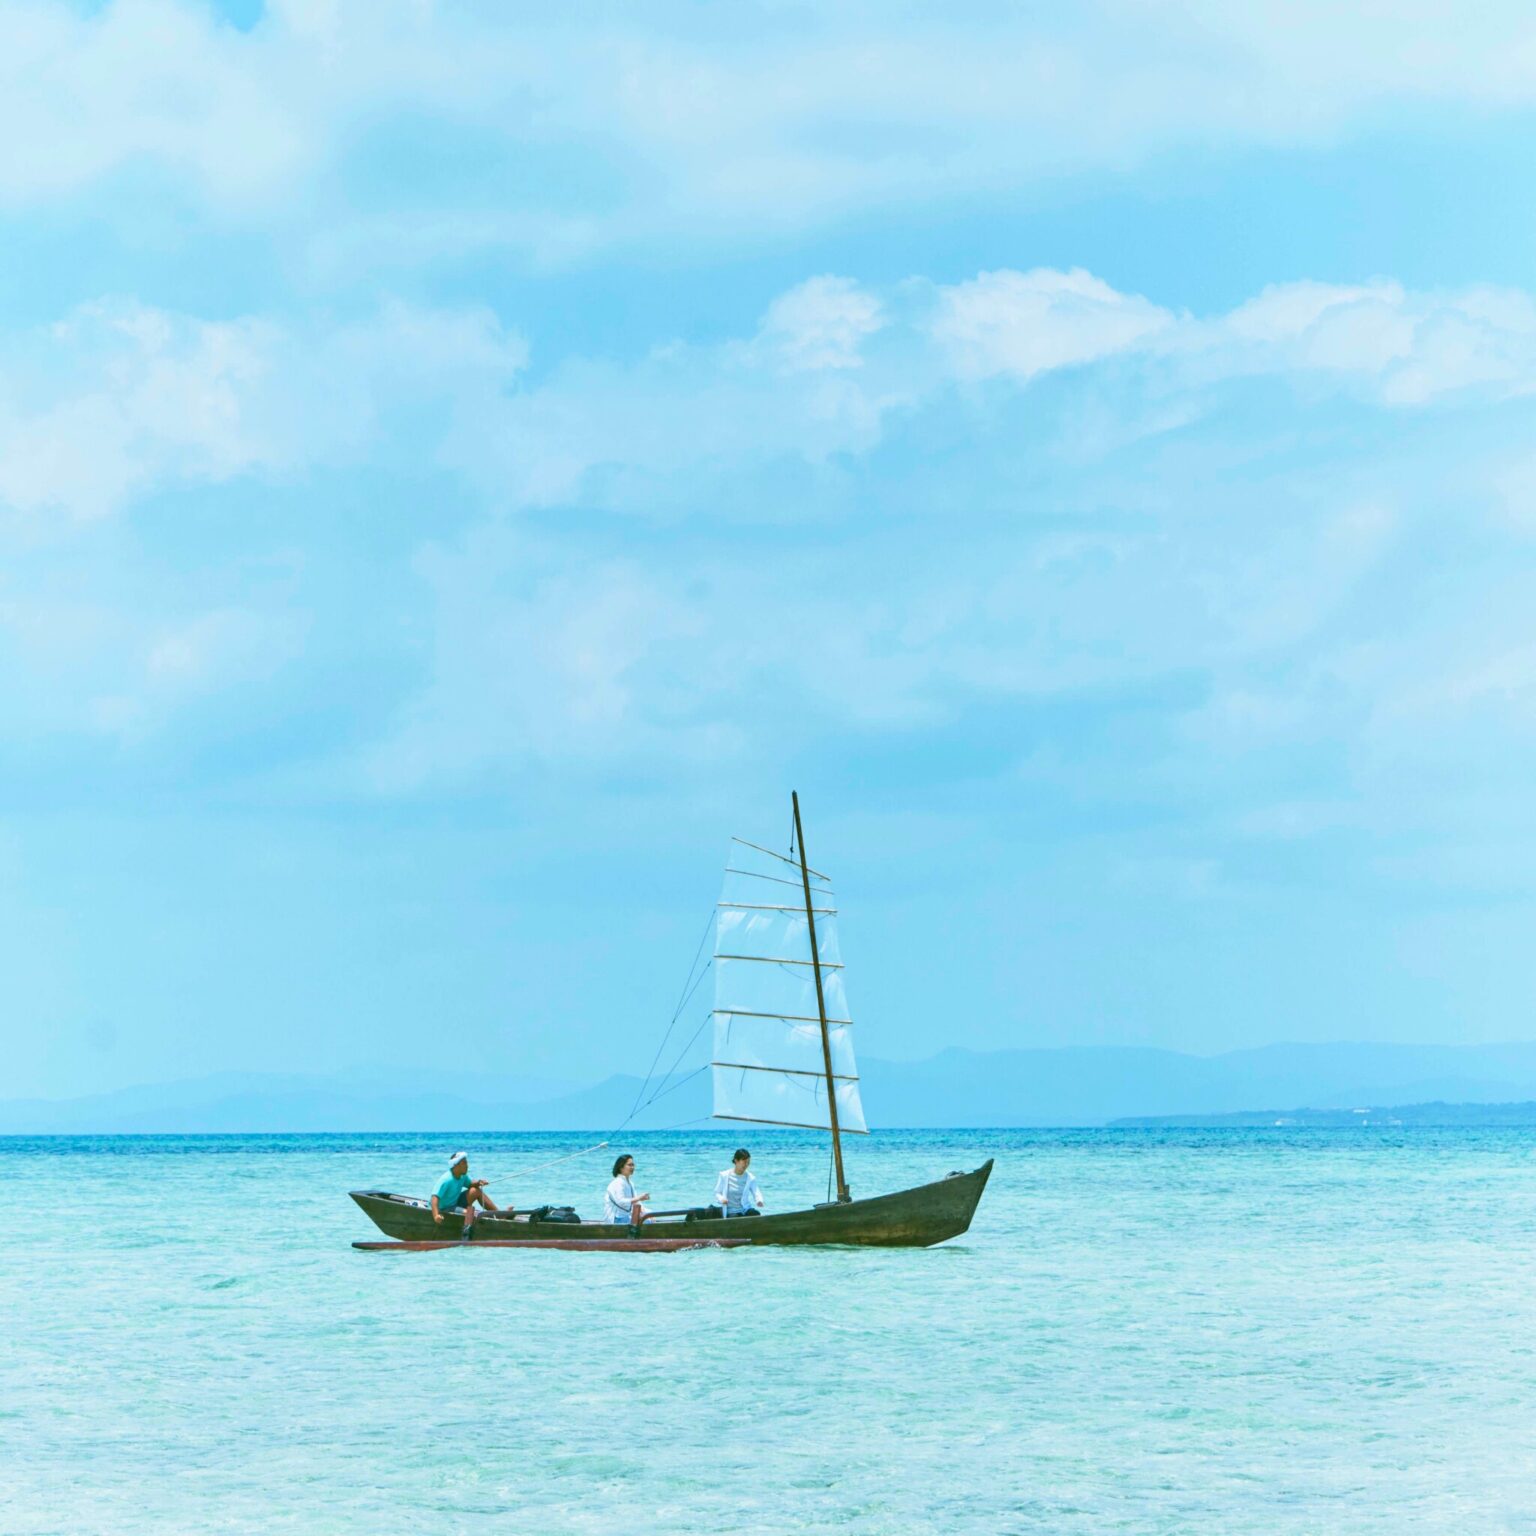 琉球の伝統的な木造帆船「サバニ」は〈星のや竹富島〉で人気のアクティビティ。心地よい海風に触れられる。